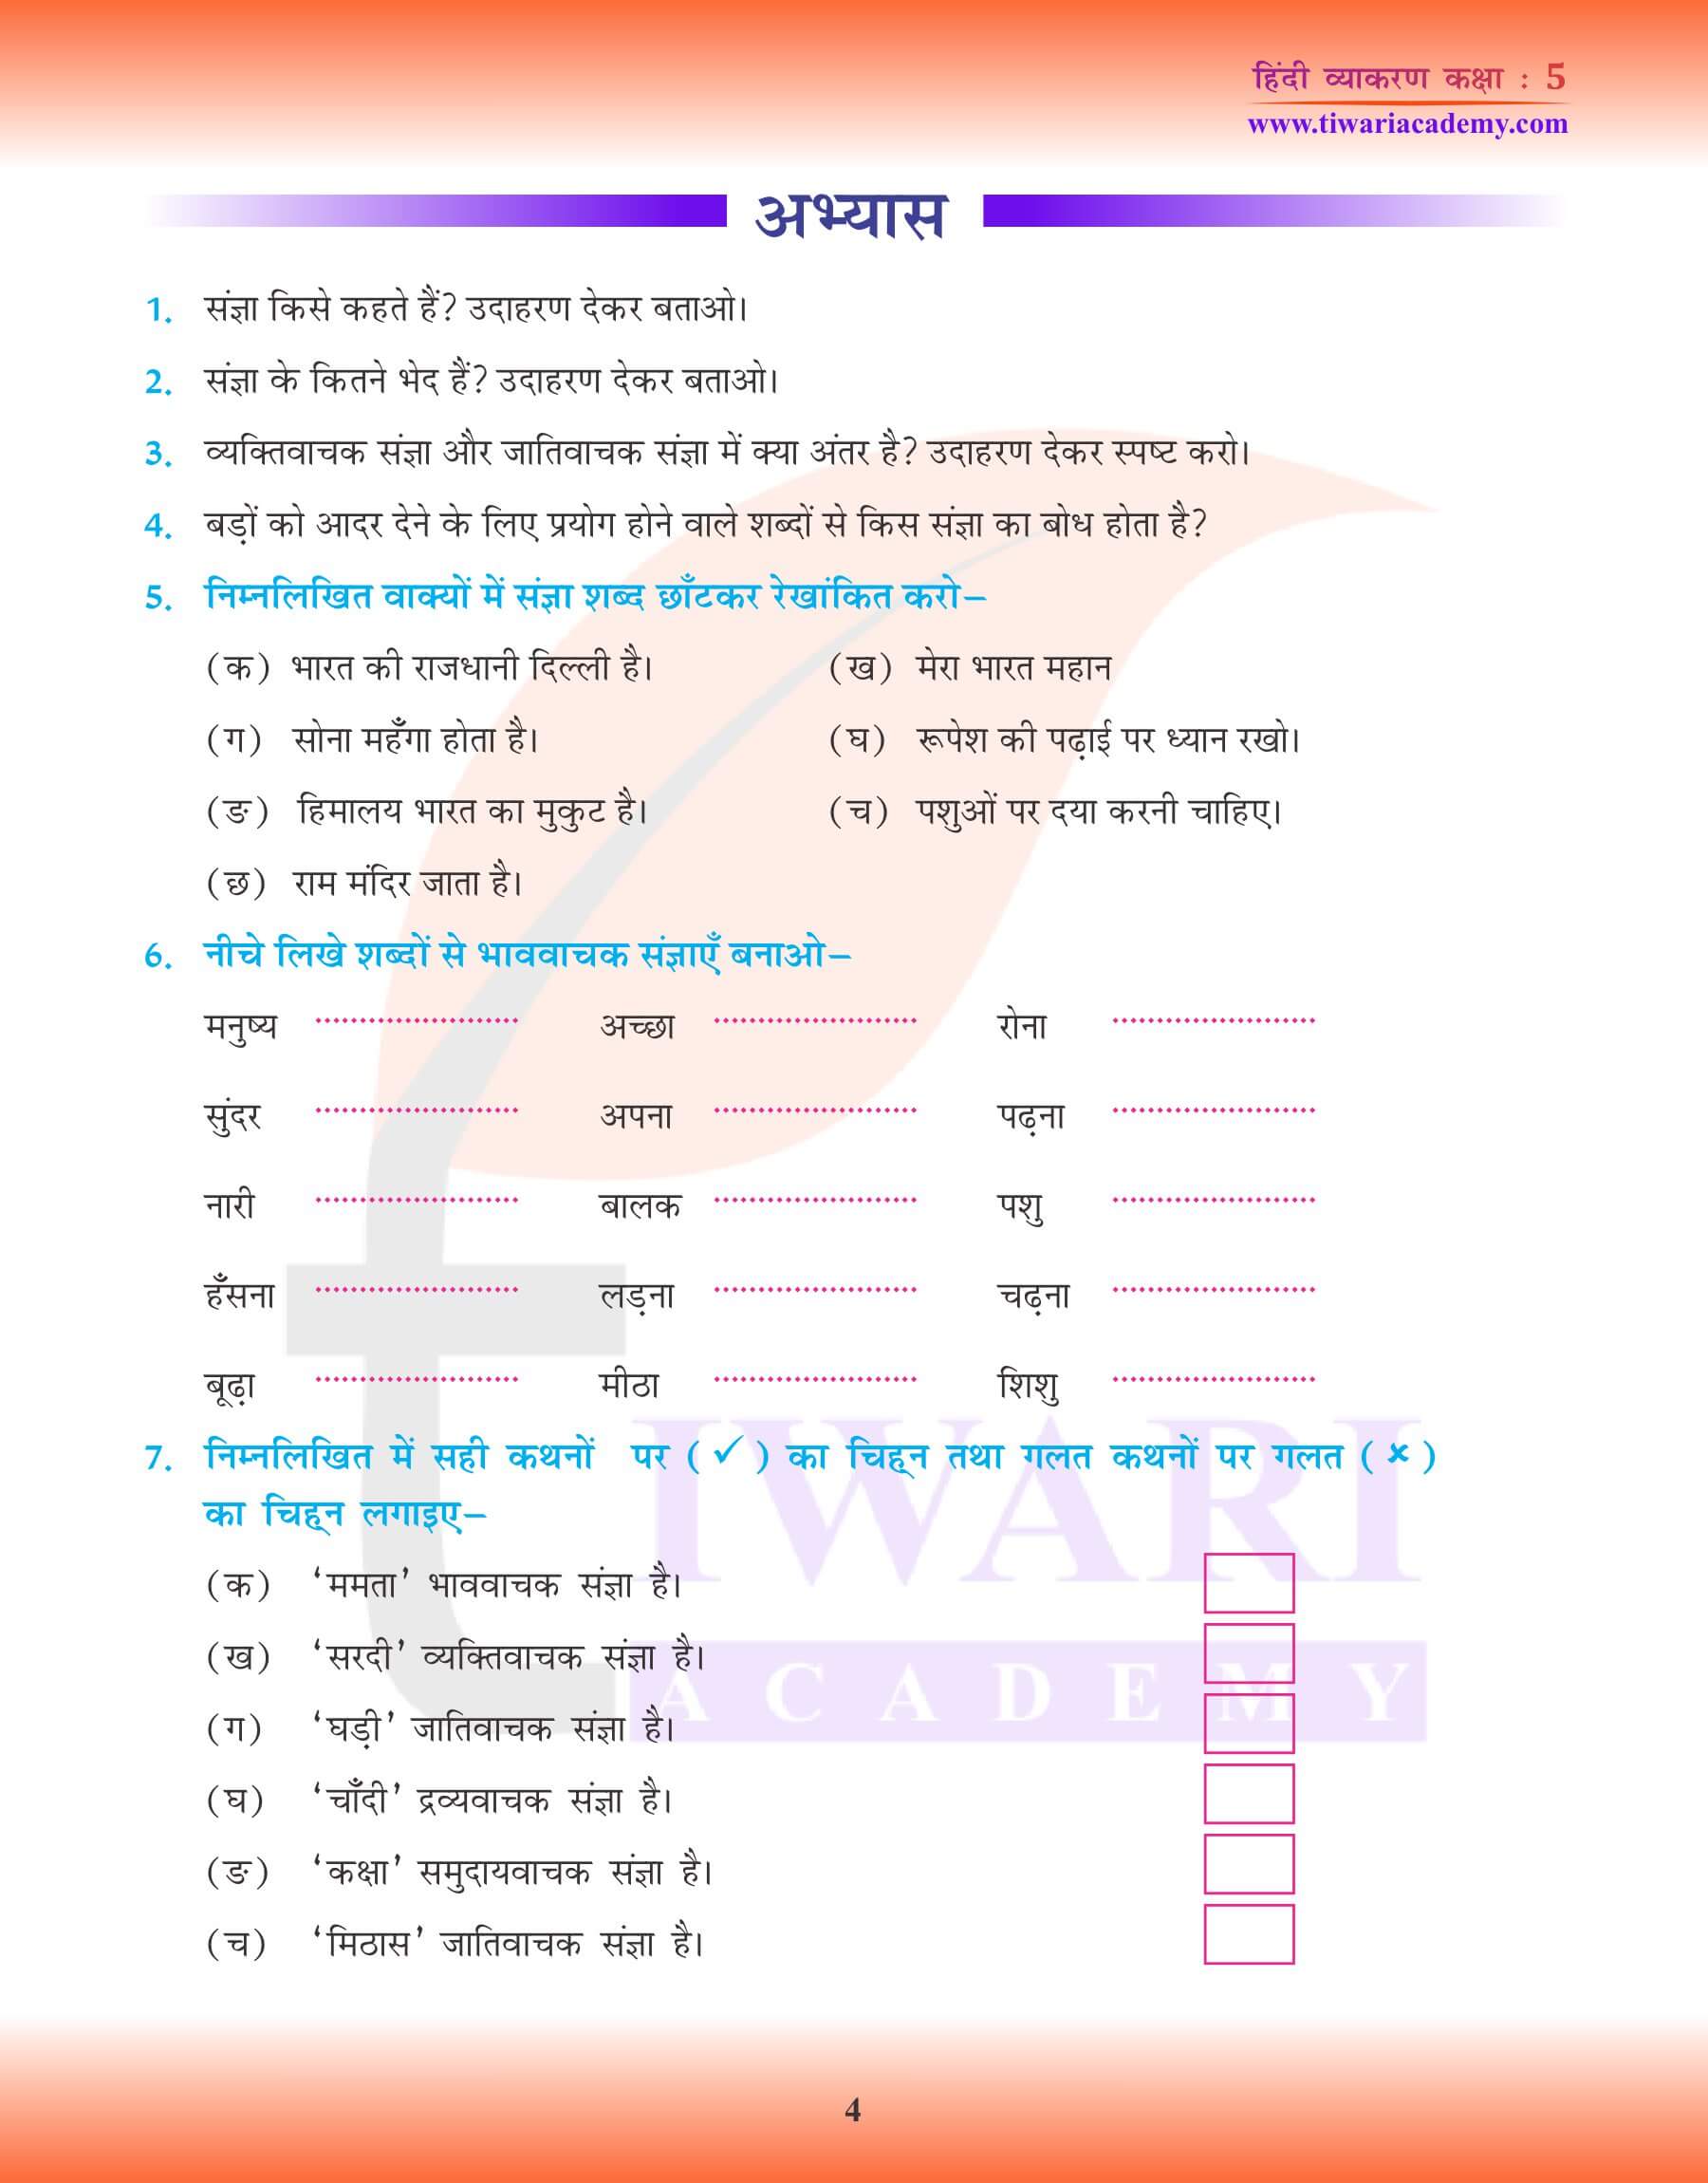 कक्षा 5 हिंदी व्याकरण में संज्ञा के उदाहरण